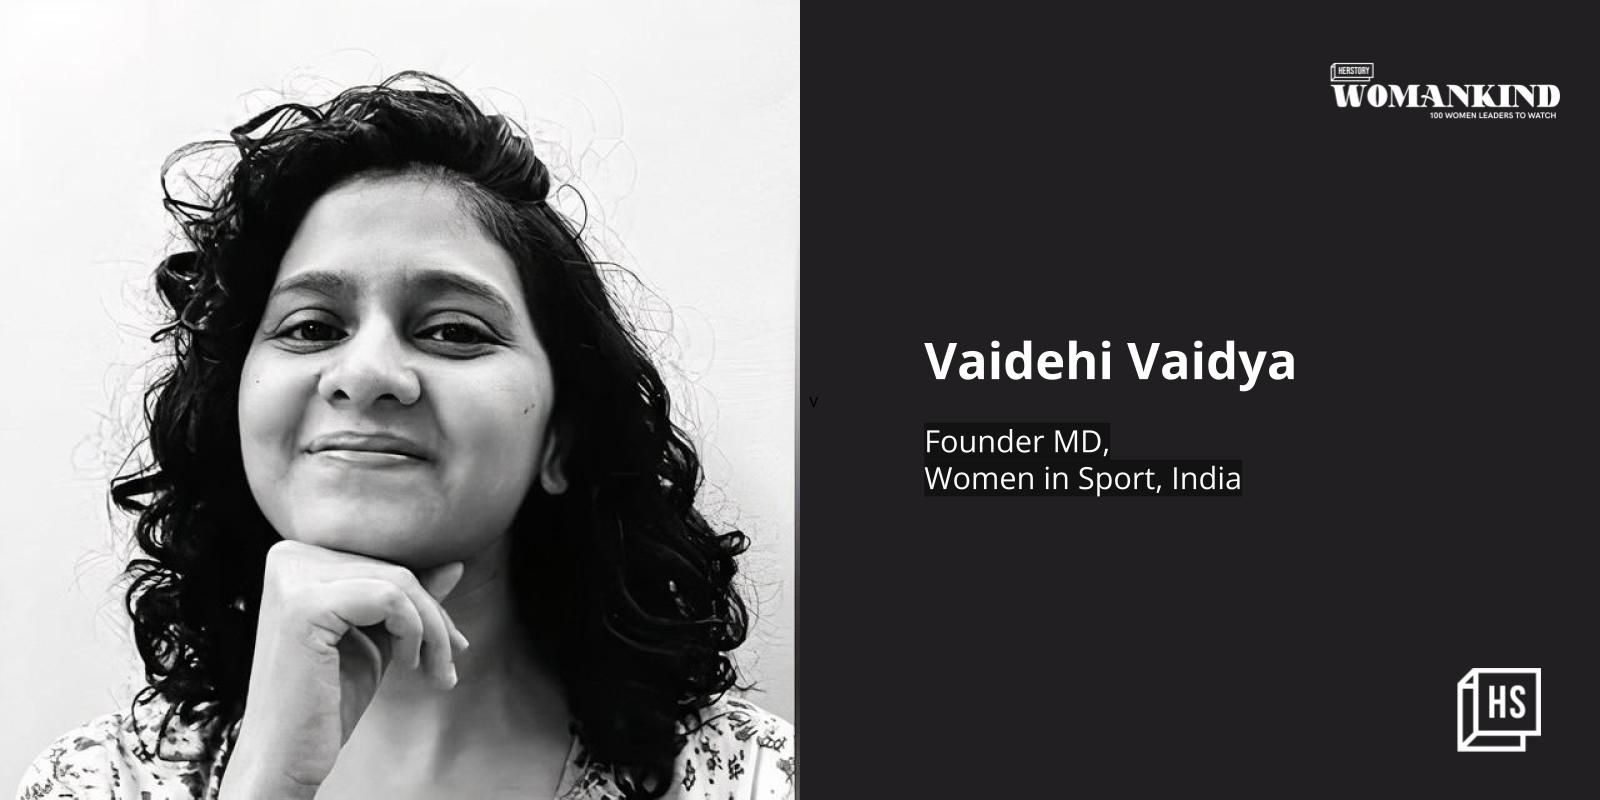 [100 Emerging Women Leaders] Vaidehi Vaidya on  accelerating women’s careers in sports via her venture